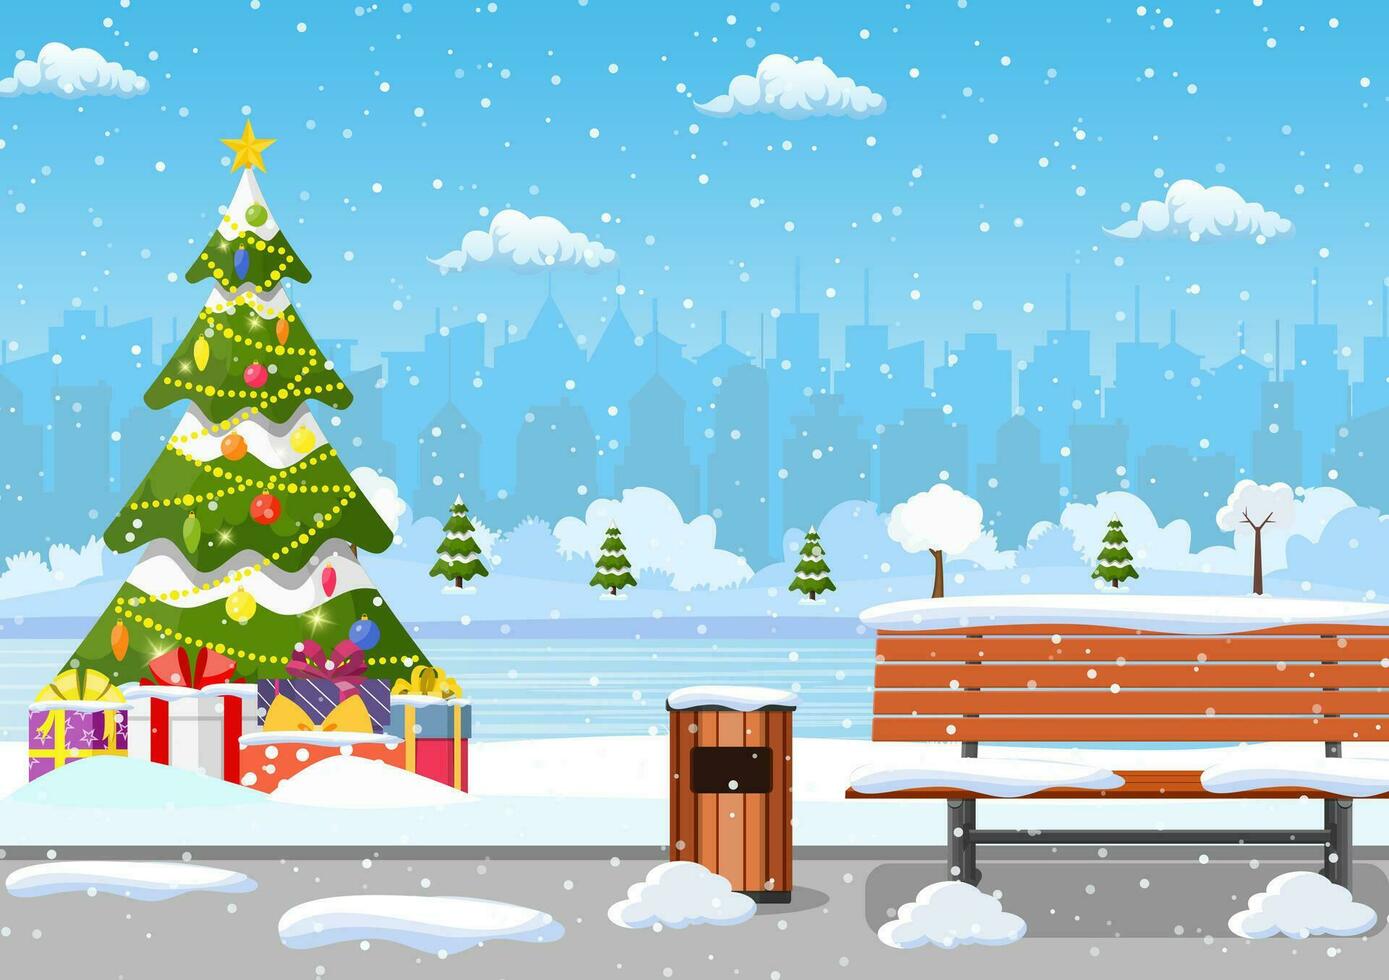 schneebedeckt Winter Stadt Park mit Weihnachten Bäume, Bank, Gehweg und Stadt Horizont. Winter Weihnachten Landschaft zum Banner, Poster, Netz. Vektor Illustration im eben Stil